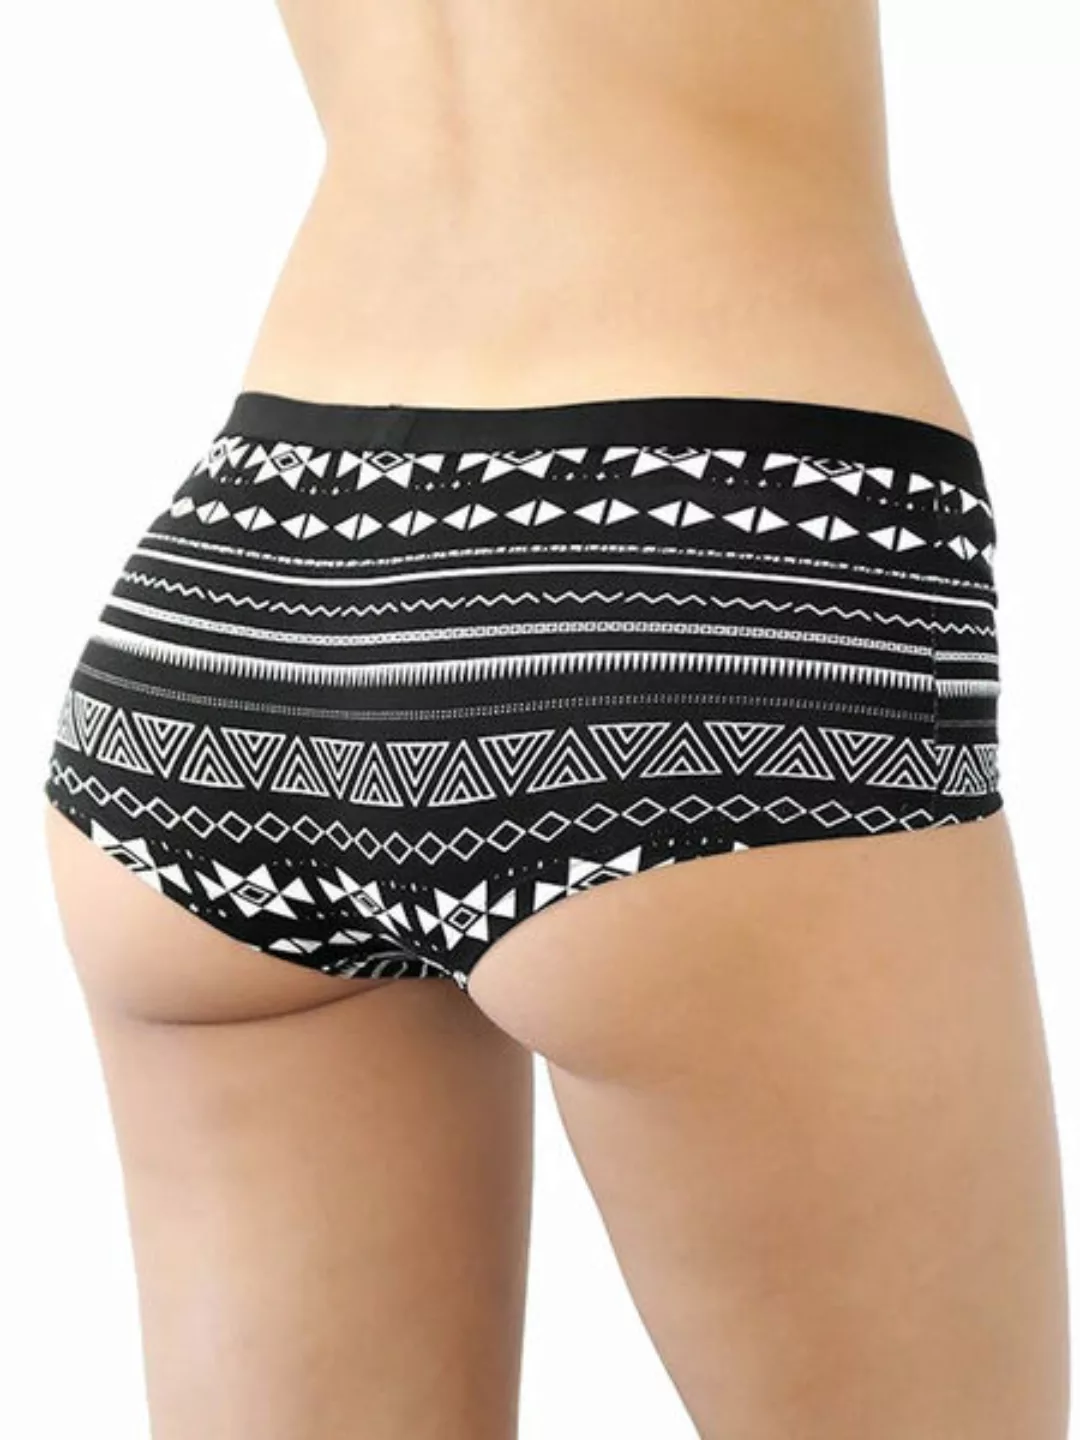 Damen Boyshort Hot Pants 2 Farben Bio-baumwolle Slip Panty günstig online kaufen